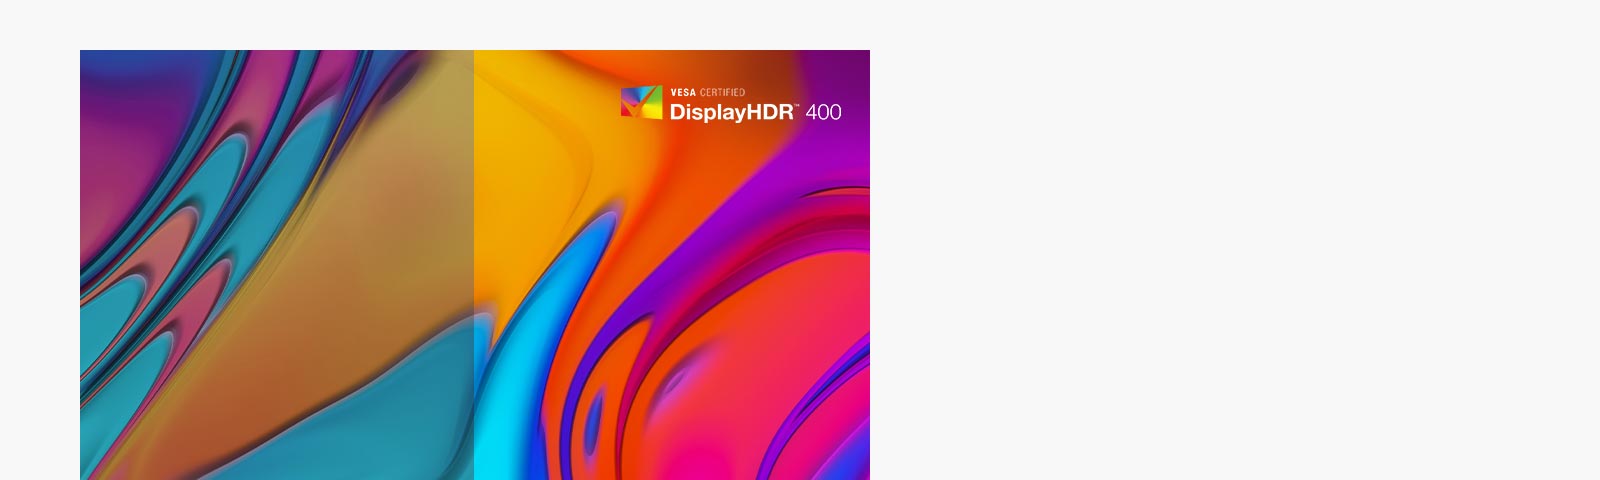 Монитор поддерживает режим VESA DisplayHDR™ 400 с широким диапазоном яркости и контрастности и обеспечивает полное визуальное погружение в новейшие игры, фильмы и изображения с поддержкой HDR.